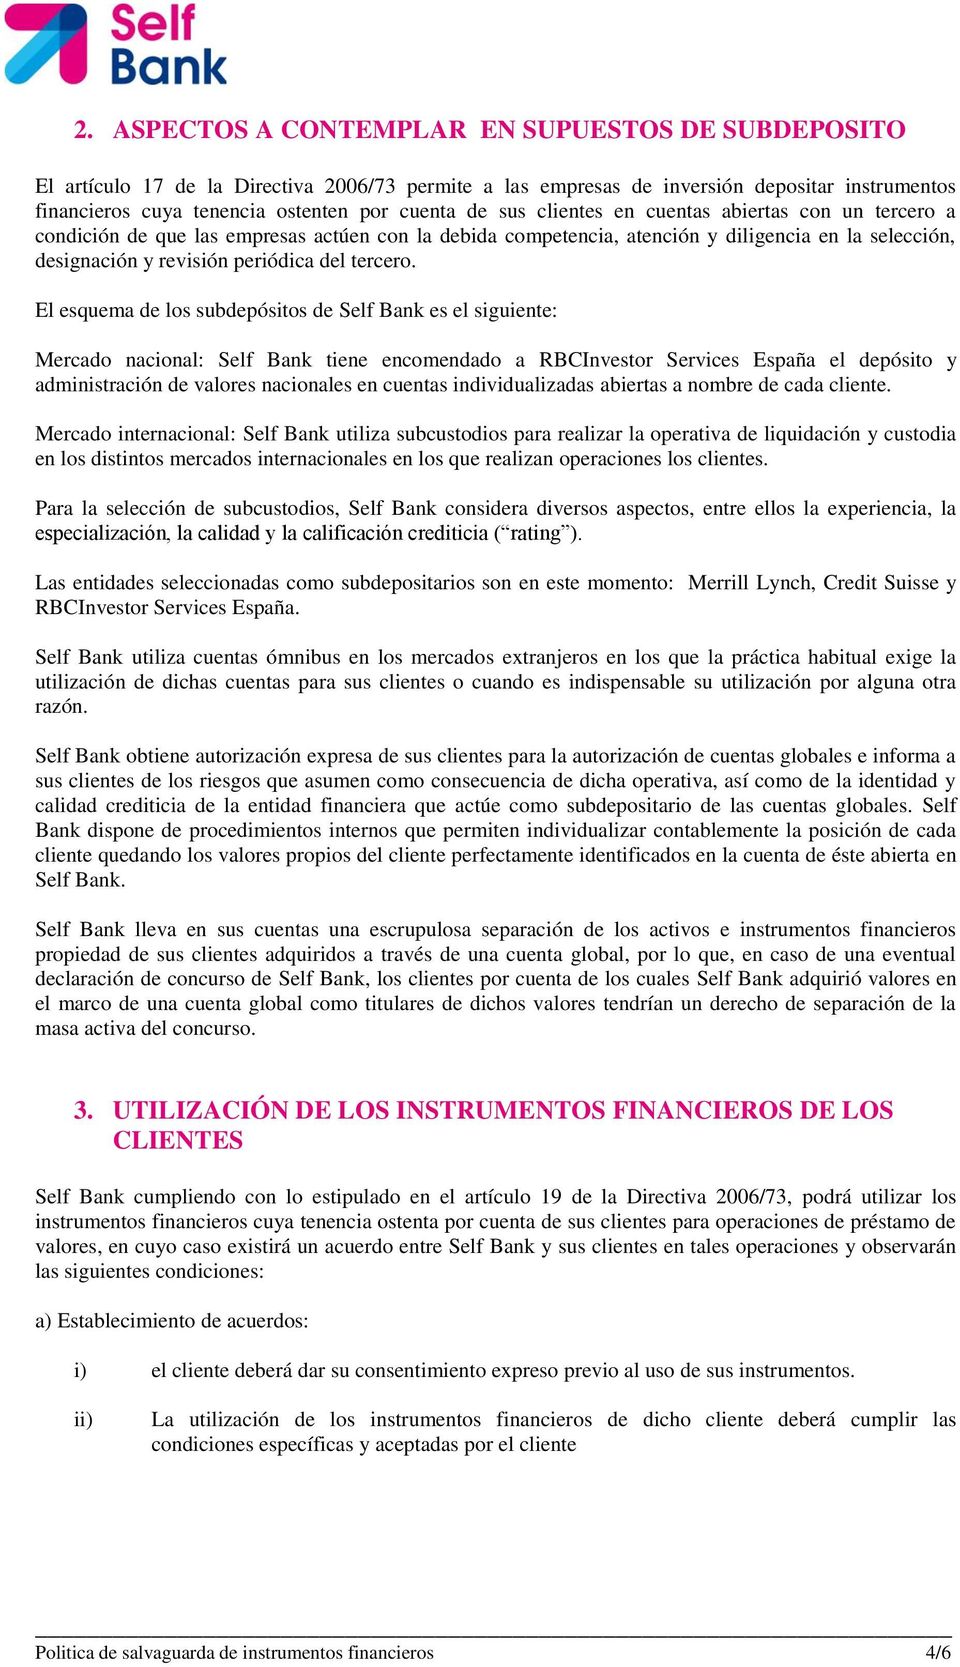 El esquema de los subdepósitos de Self Bank es el siguiente: Mercado nacional: Self Bank tiene encomendado a RBCInvestor Services España el depósito y administración de valores nacionales en cuentas